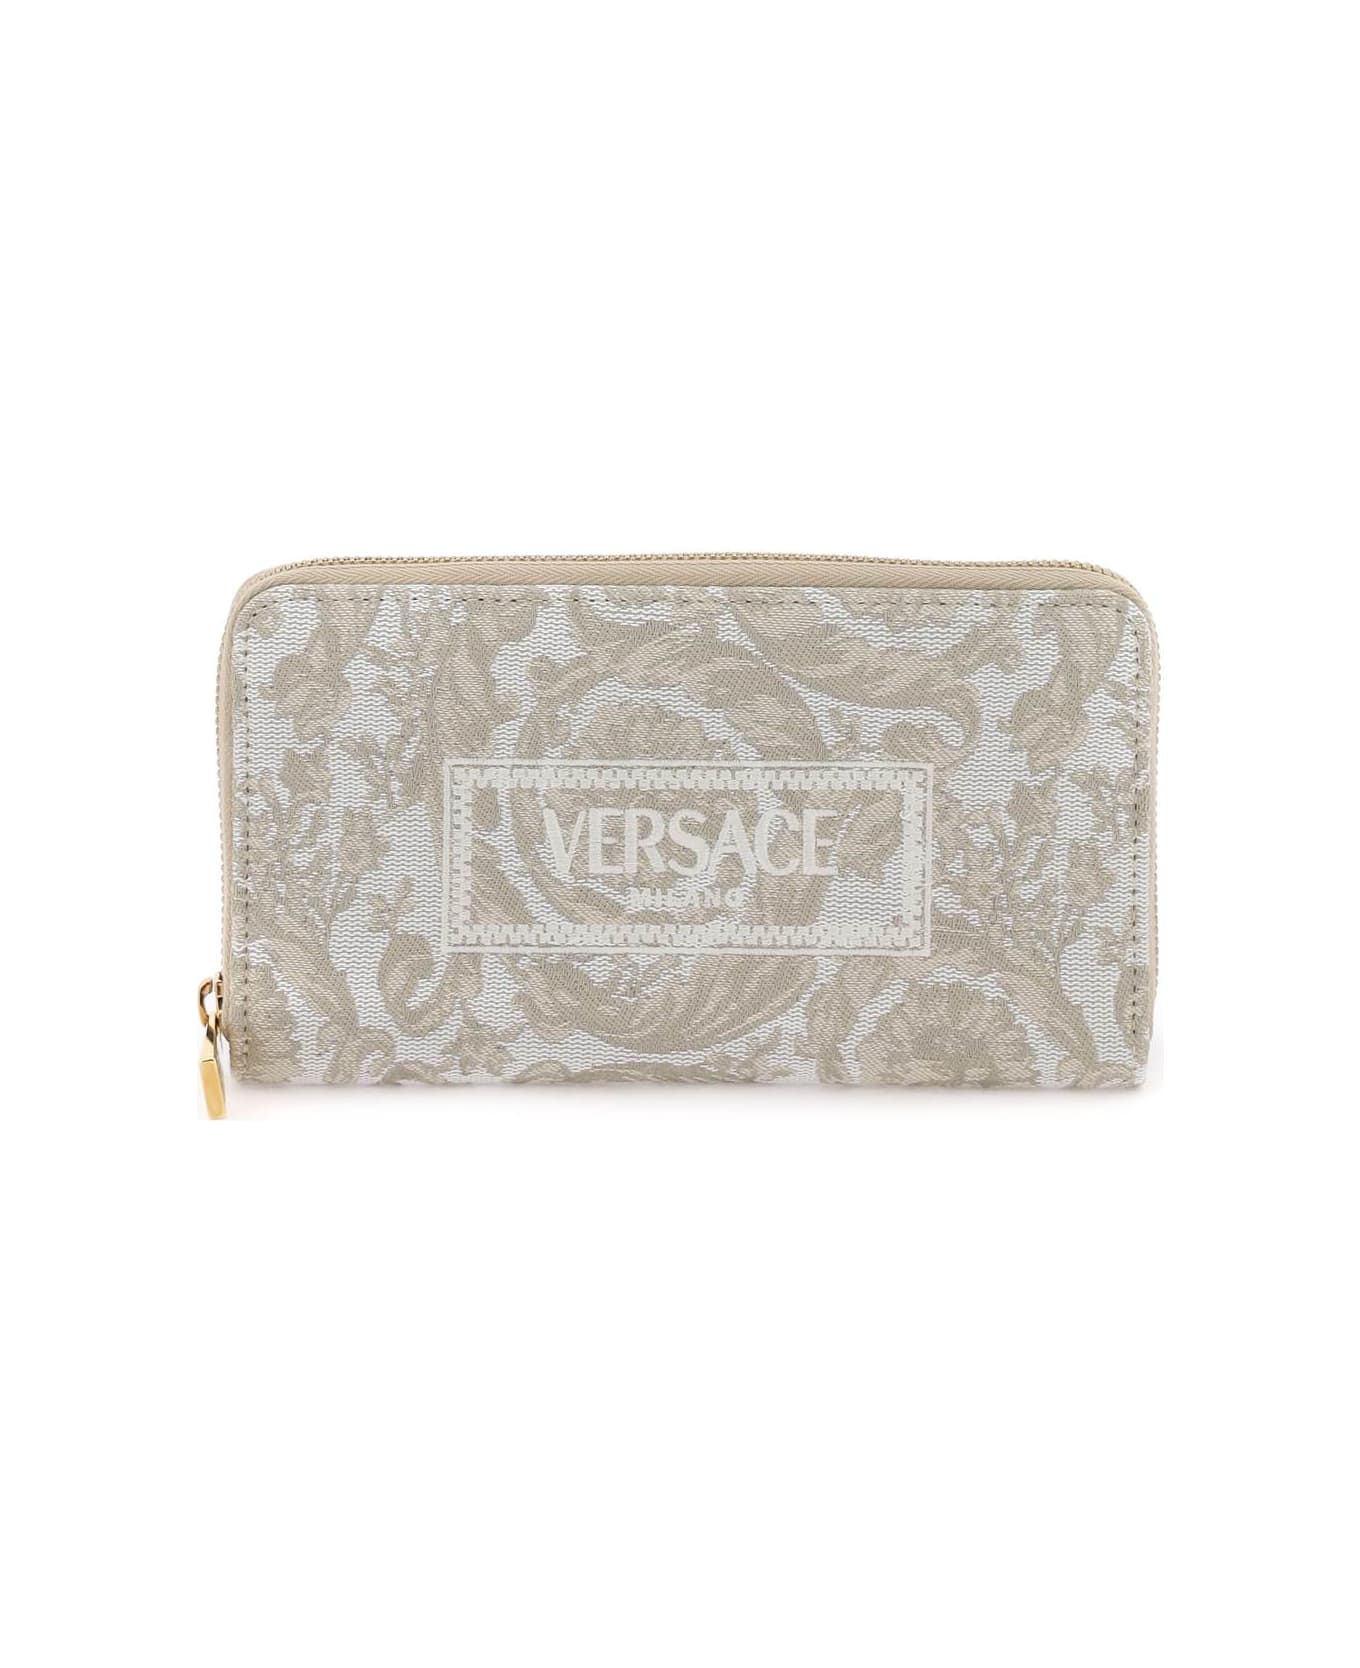 Versace Barocco Long Wallet - BEIGE BEIGE VERSACE GOLD (Beige)